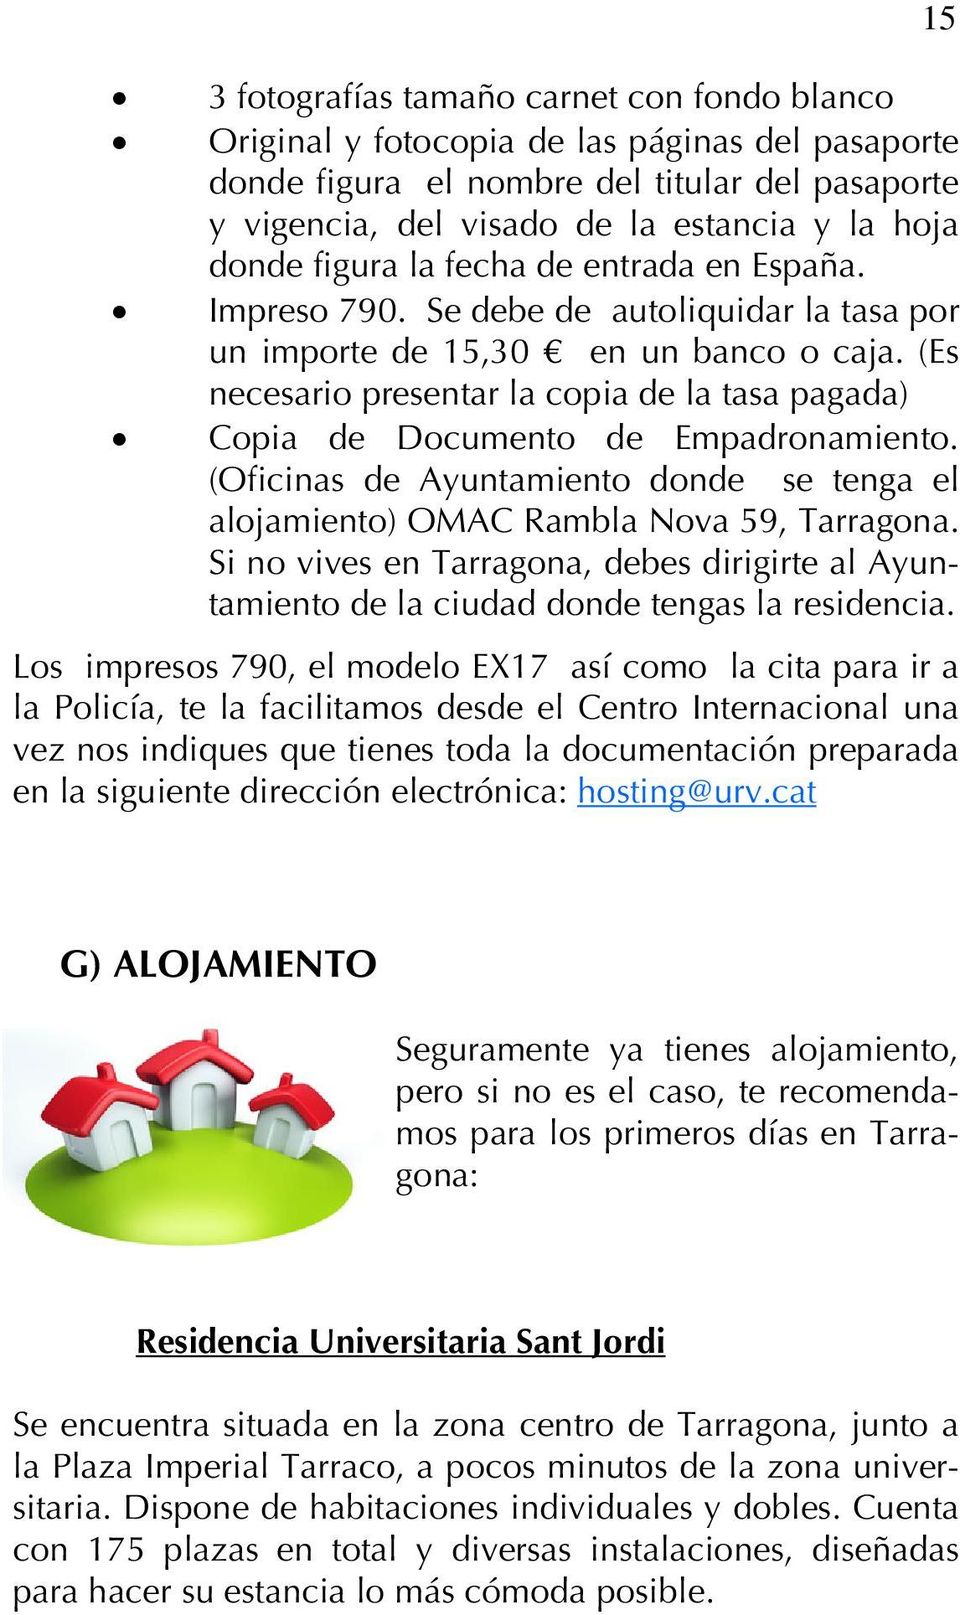 (Es necesario presentar la copia de la tasa pagada) Copia de Documento de Empadronamiento. (Oficinas de Ayuntamiento donde se tenga el alojamiento) OMAC Rambla Nova 59, Tarragona.